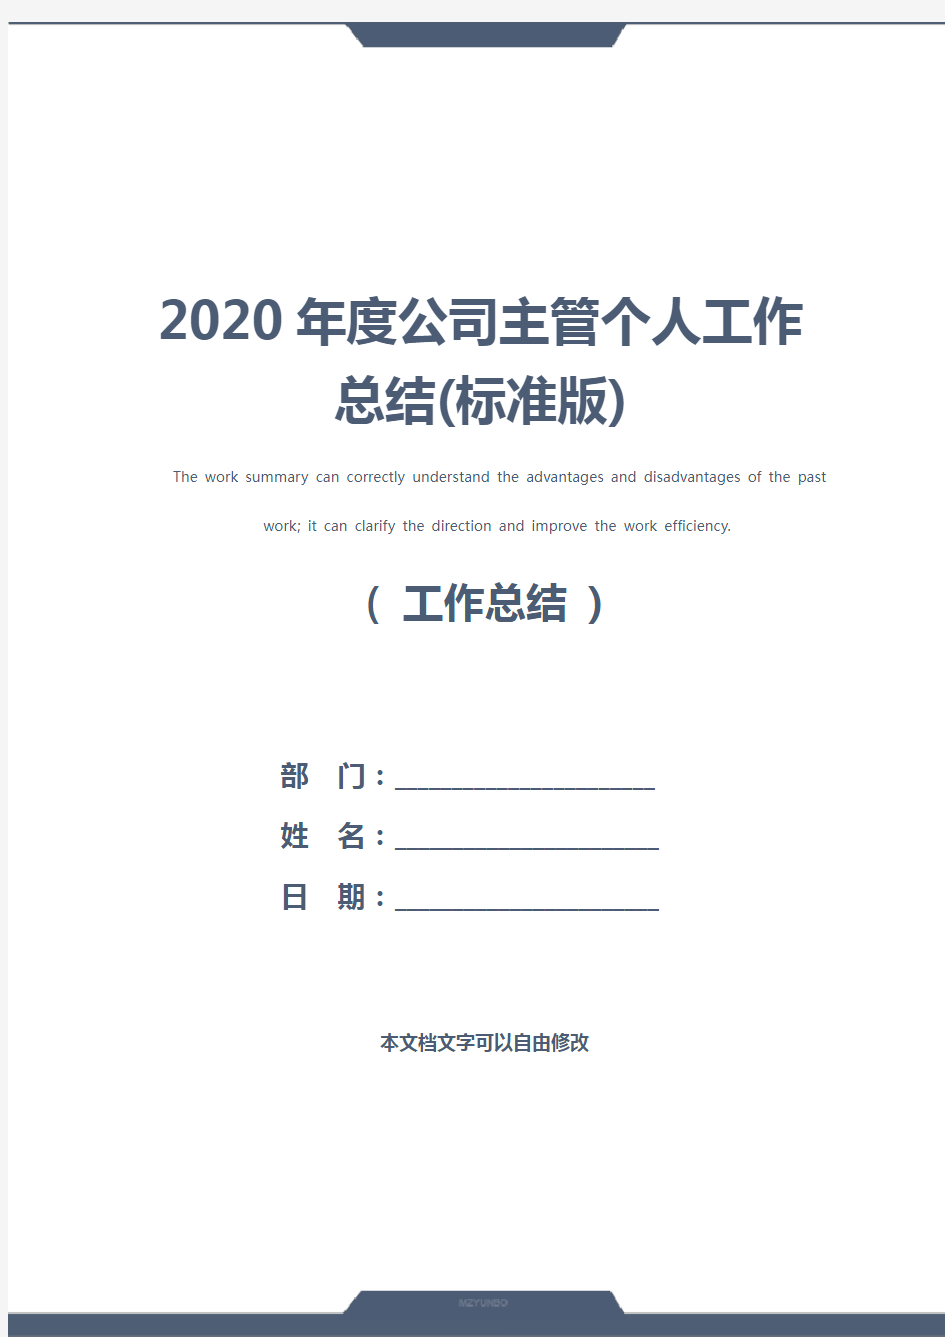 2020年度公司主管个人工作总结(标准版)